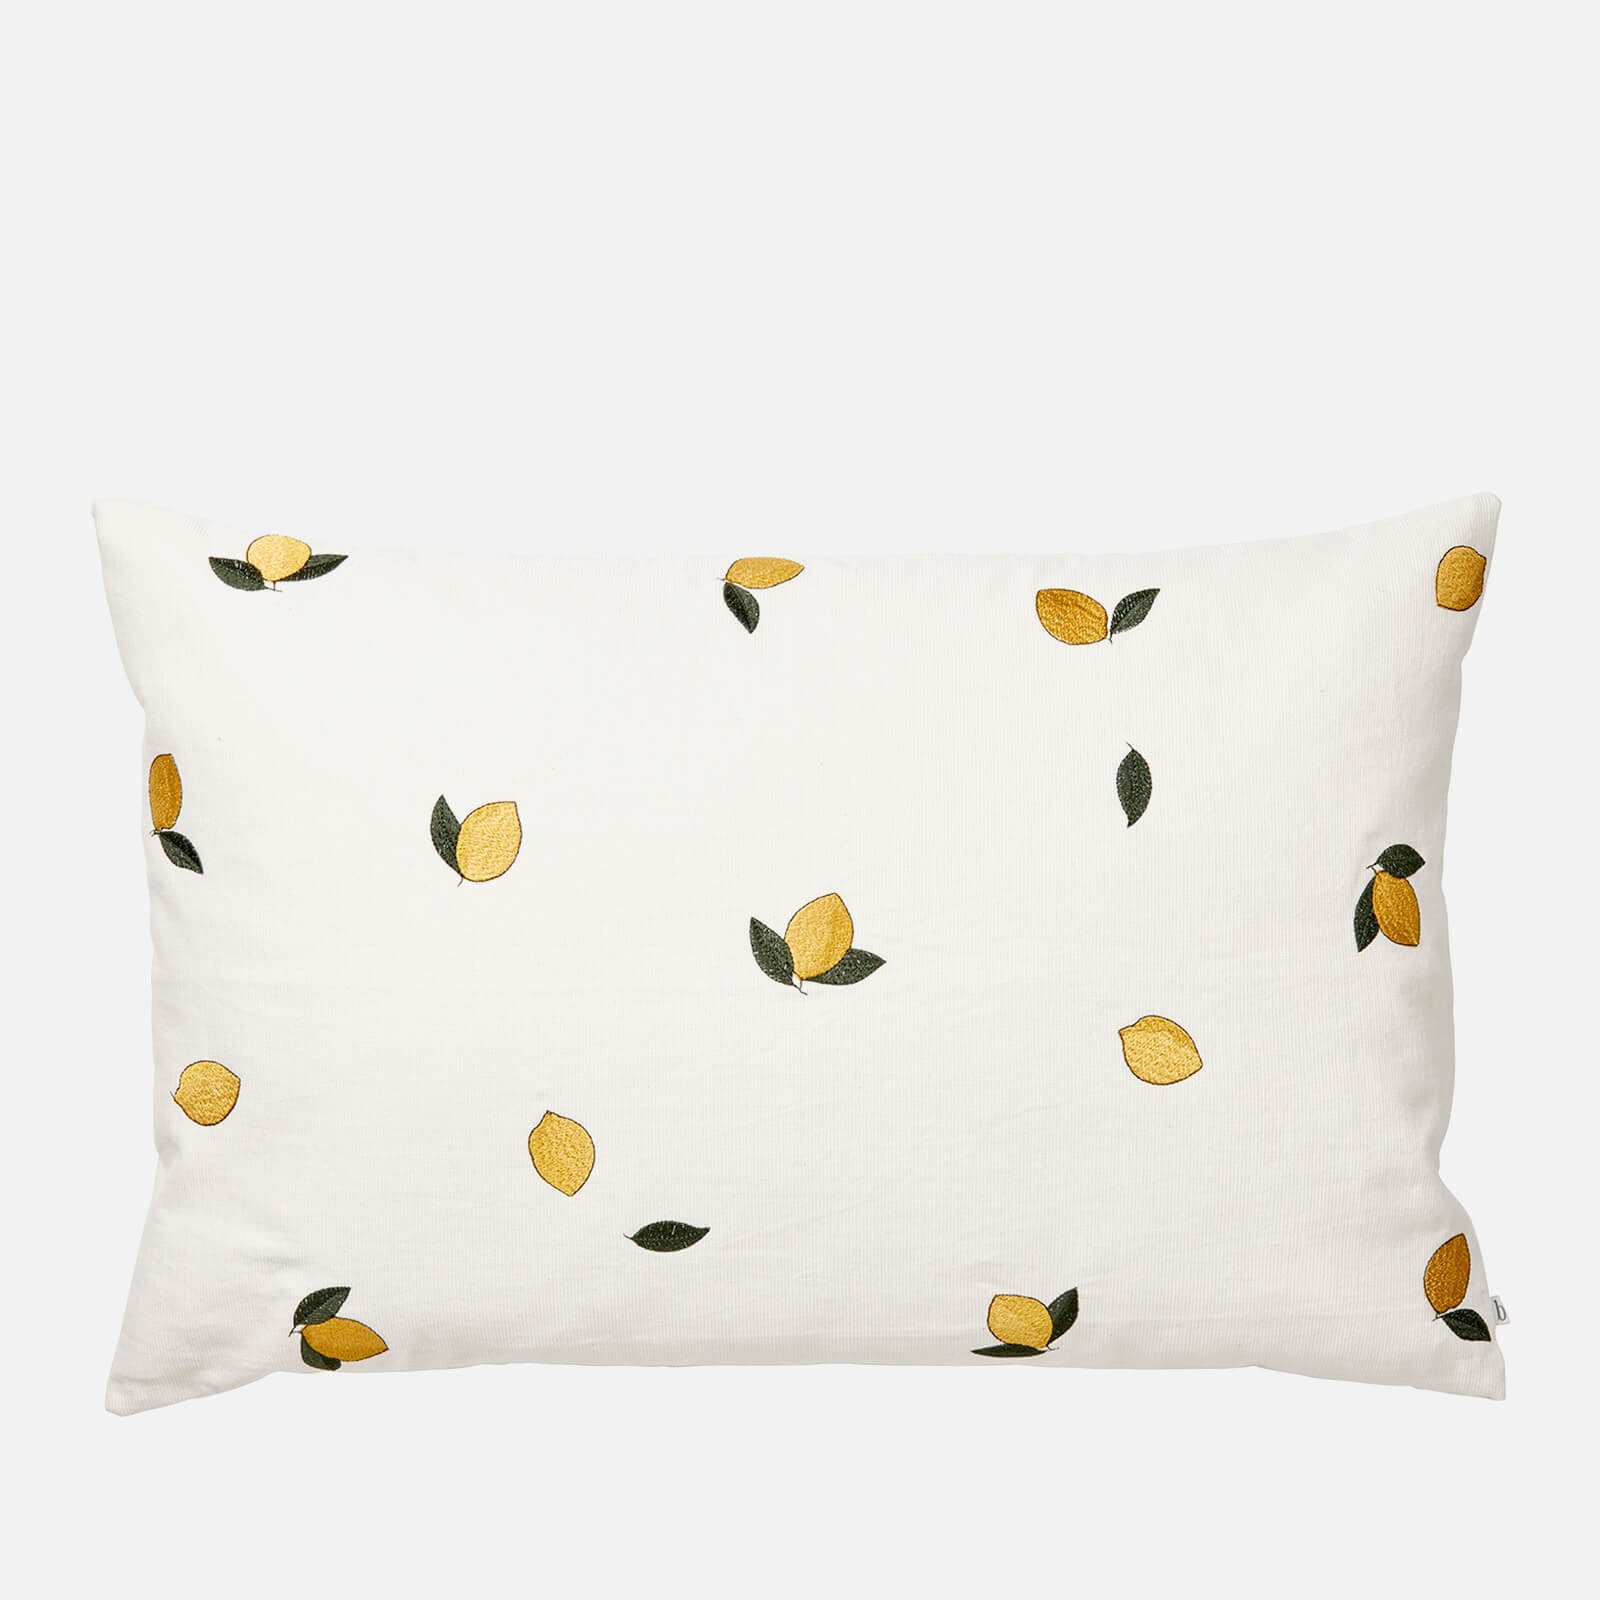 Photos - Pillow Broste Copenhagen Embroidered Cushion Cover - Lemon - 40cm x 60cm 50030267